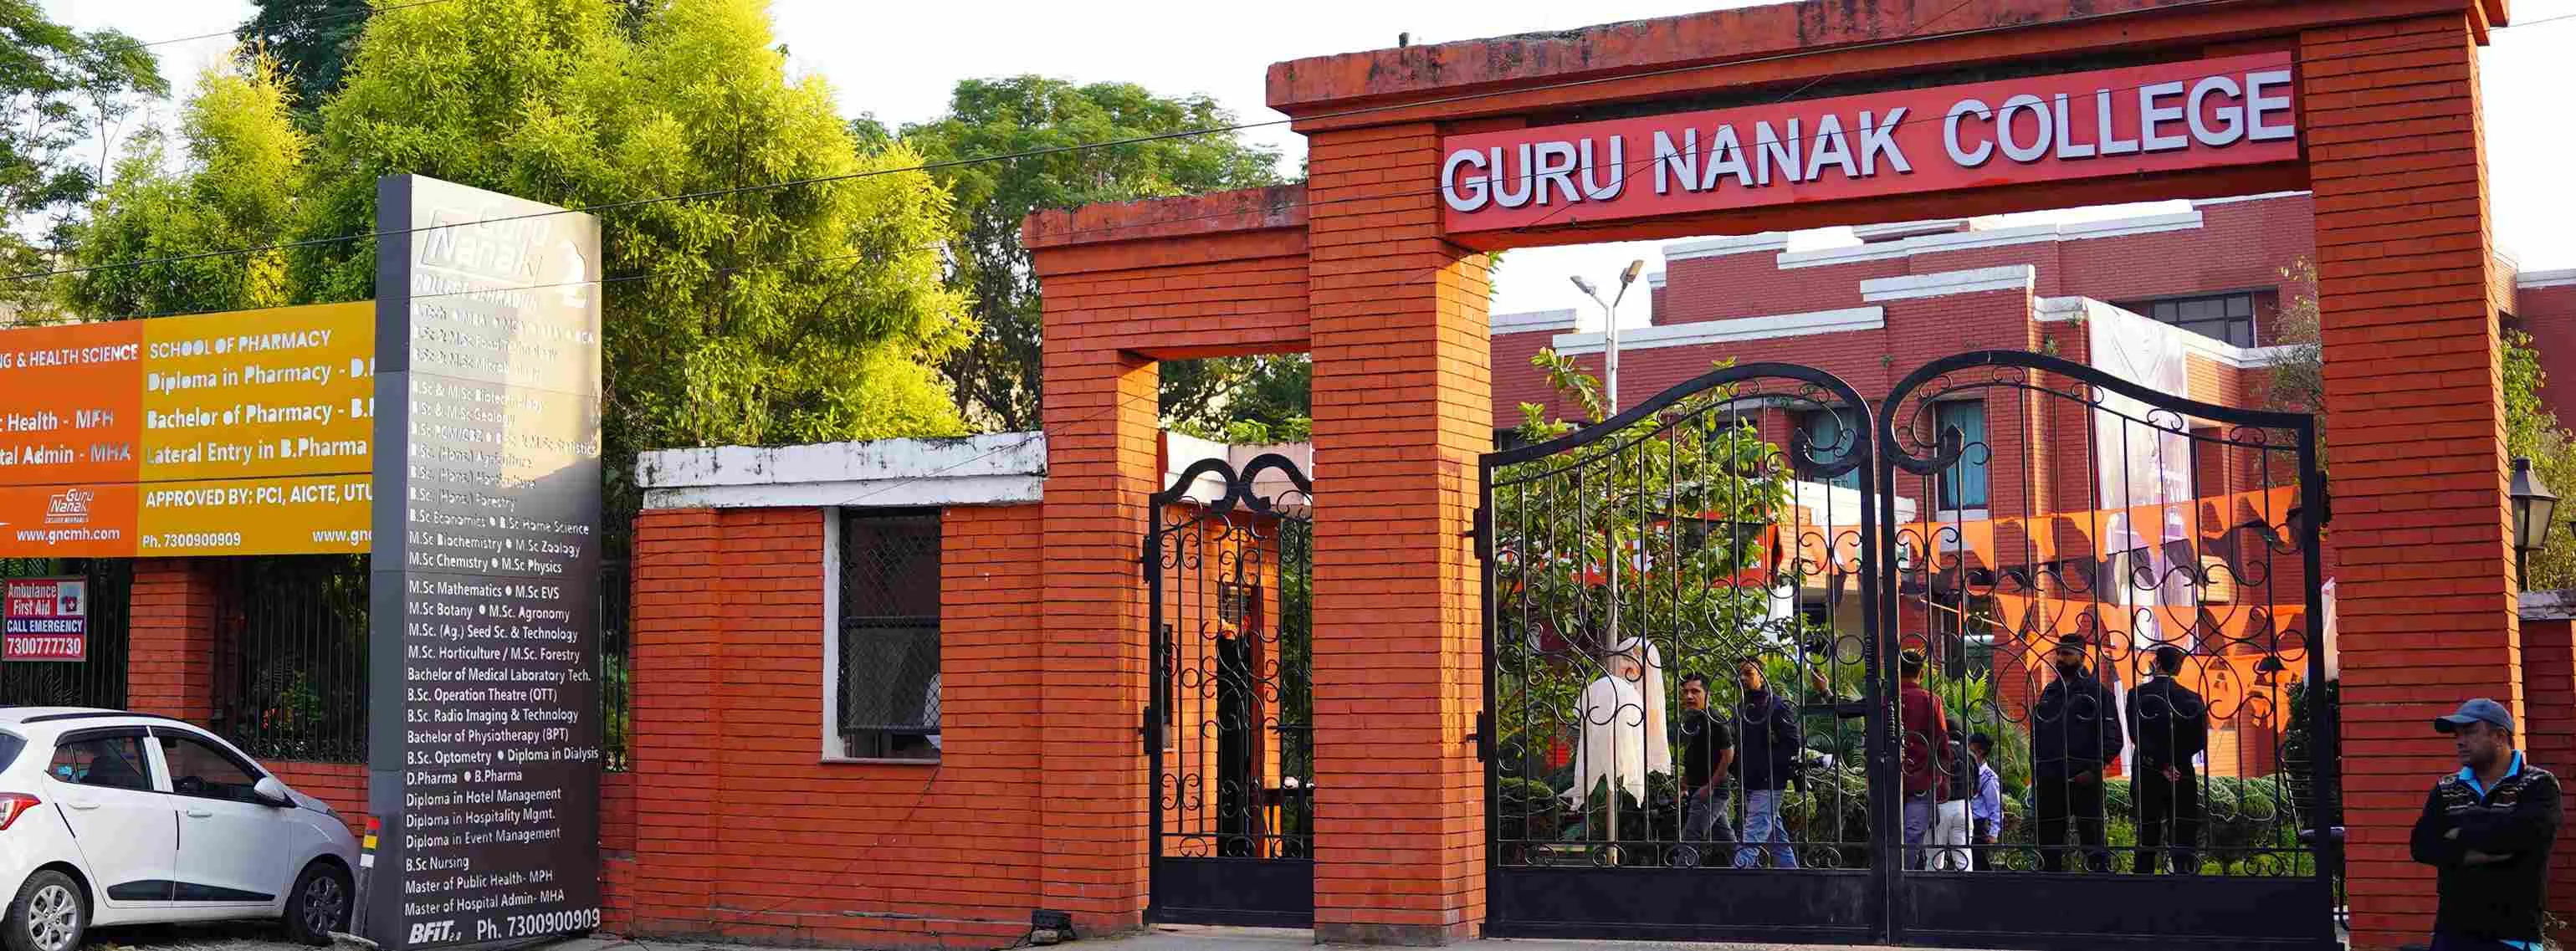 Guru Nanak College Campus